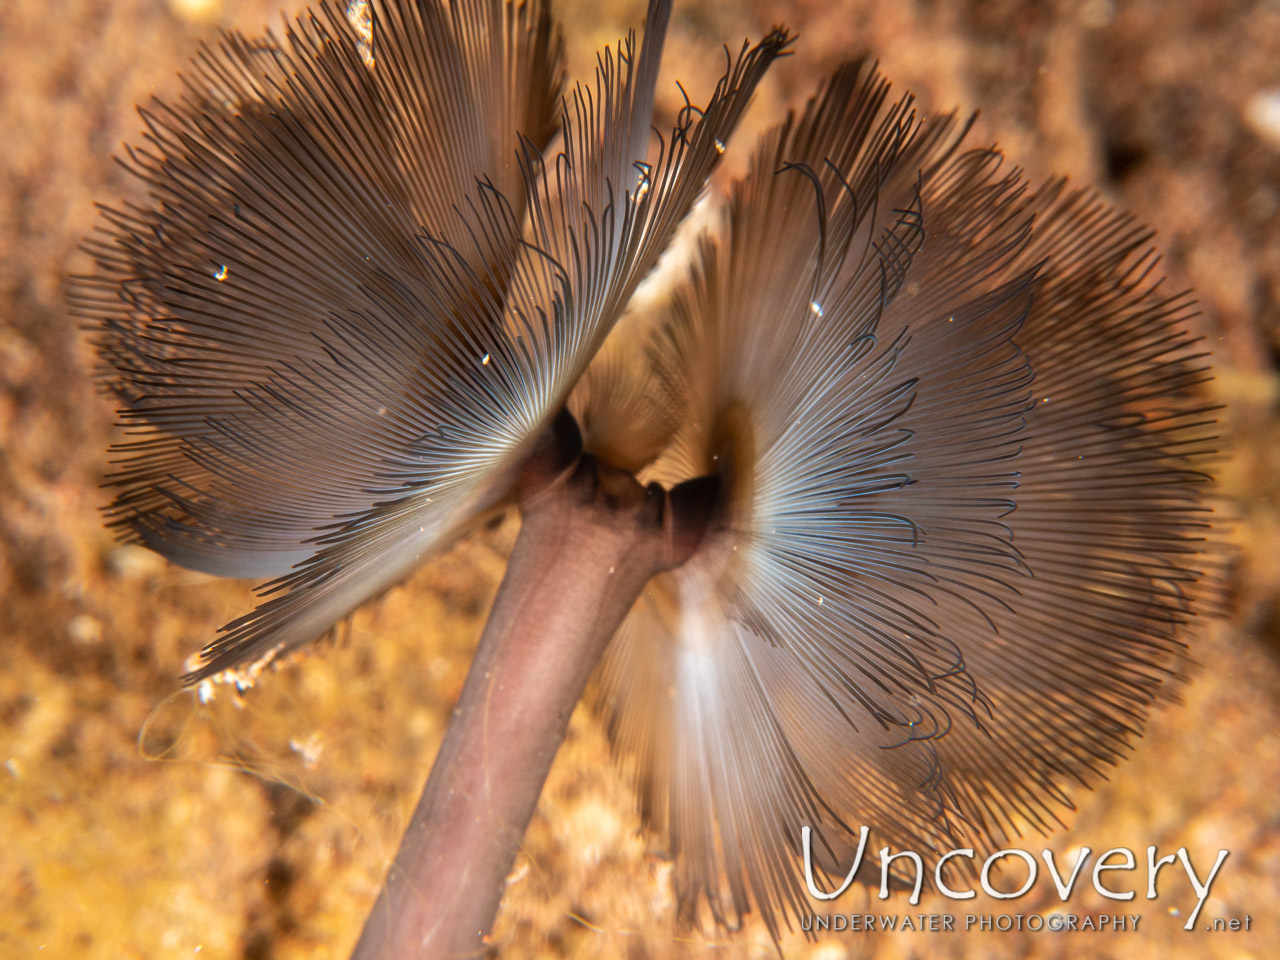 Southern Horseshoe Worm (phoronis Australis), photo taken in Indonesia, Bali, Tulamben, Tukad Linggah